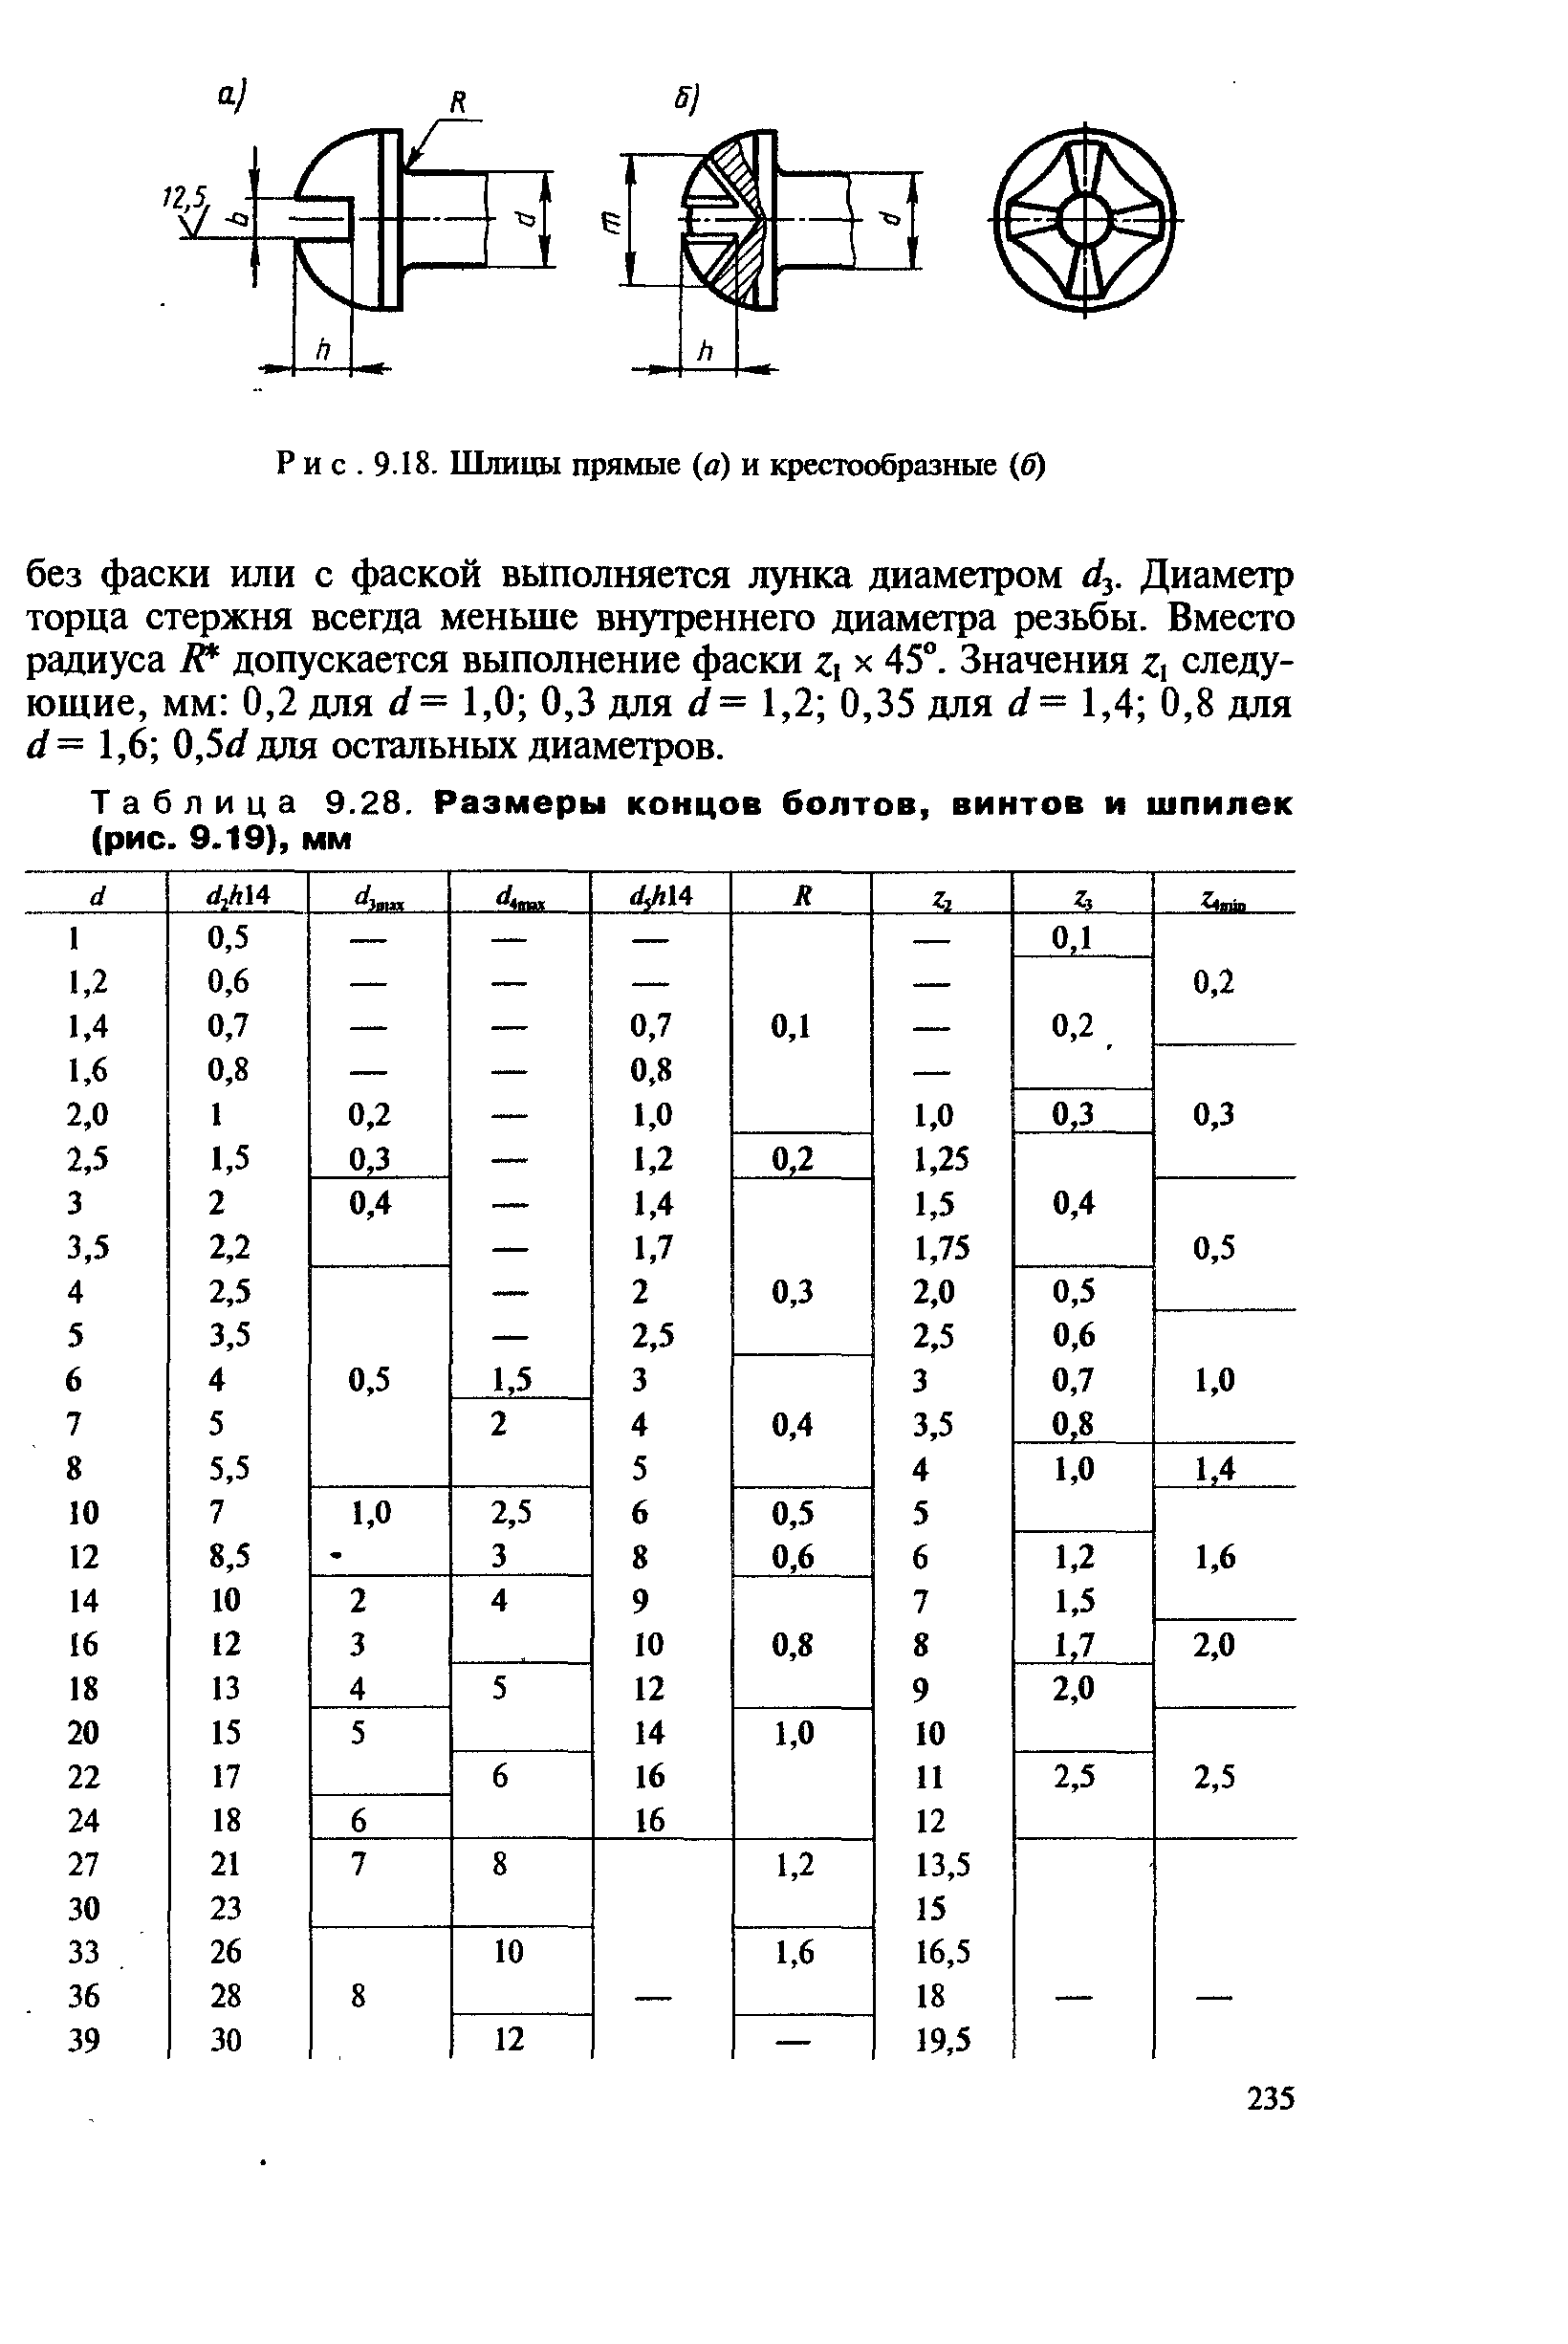 Таблица 9.28. Размеры концов болтов, <a href="/info/362">винтов</a> и шпилек (рис. 9.19), мм
